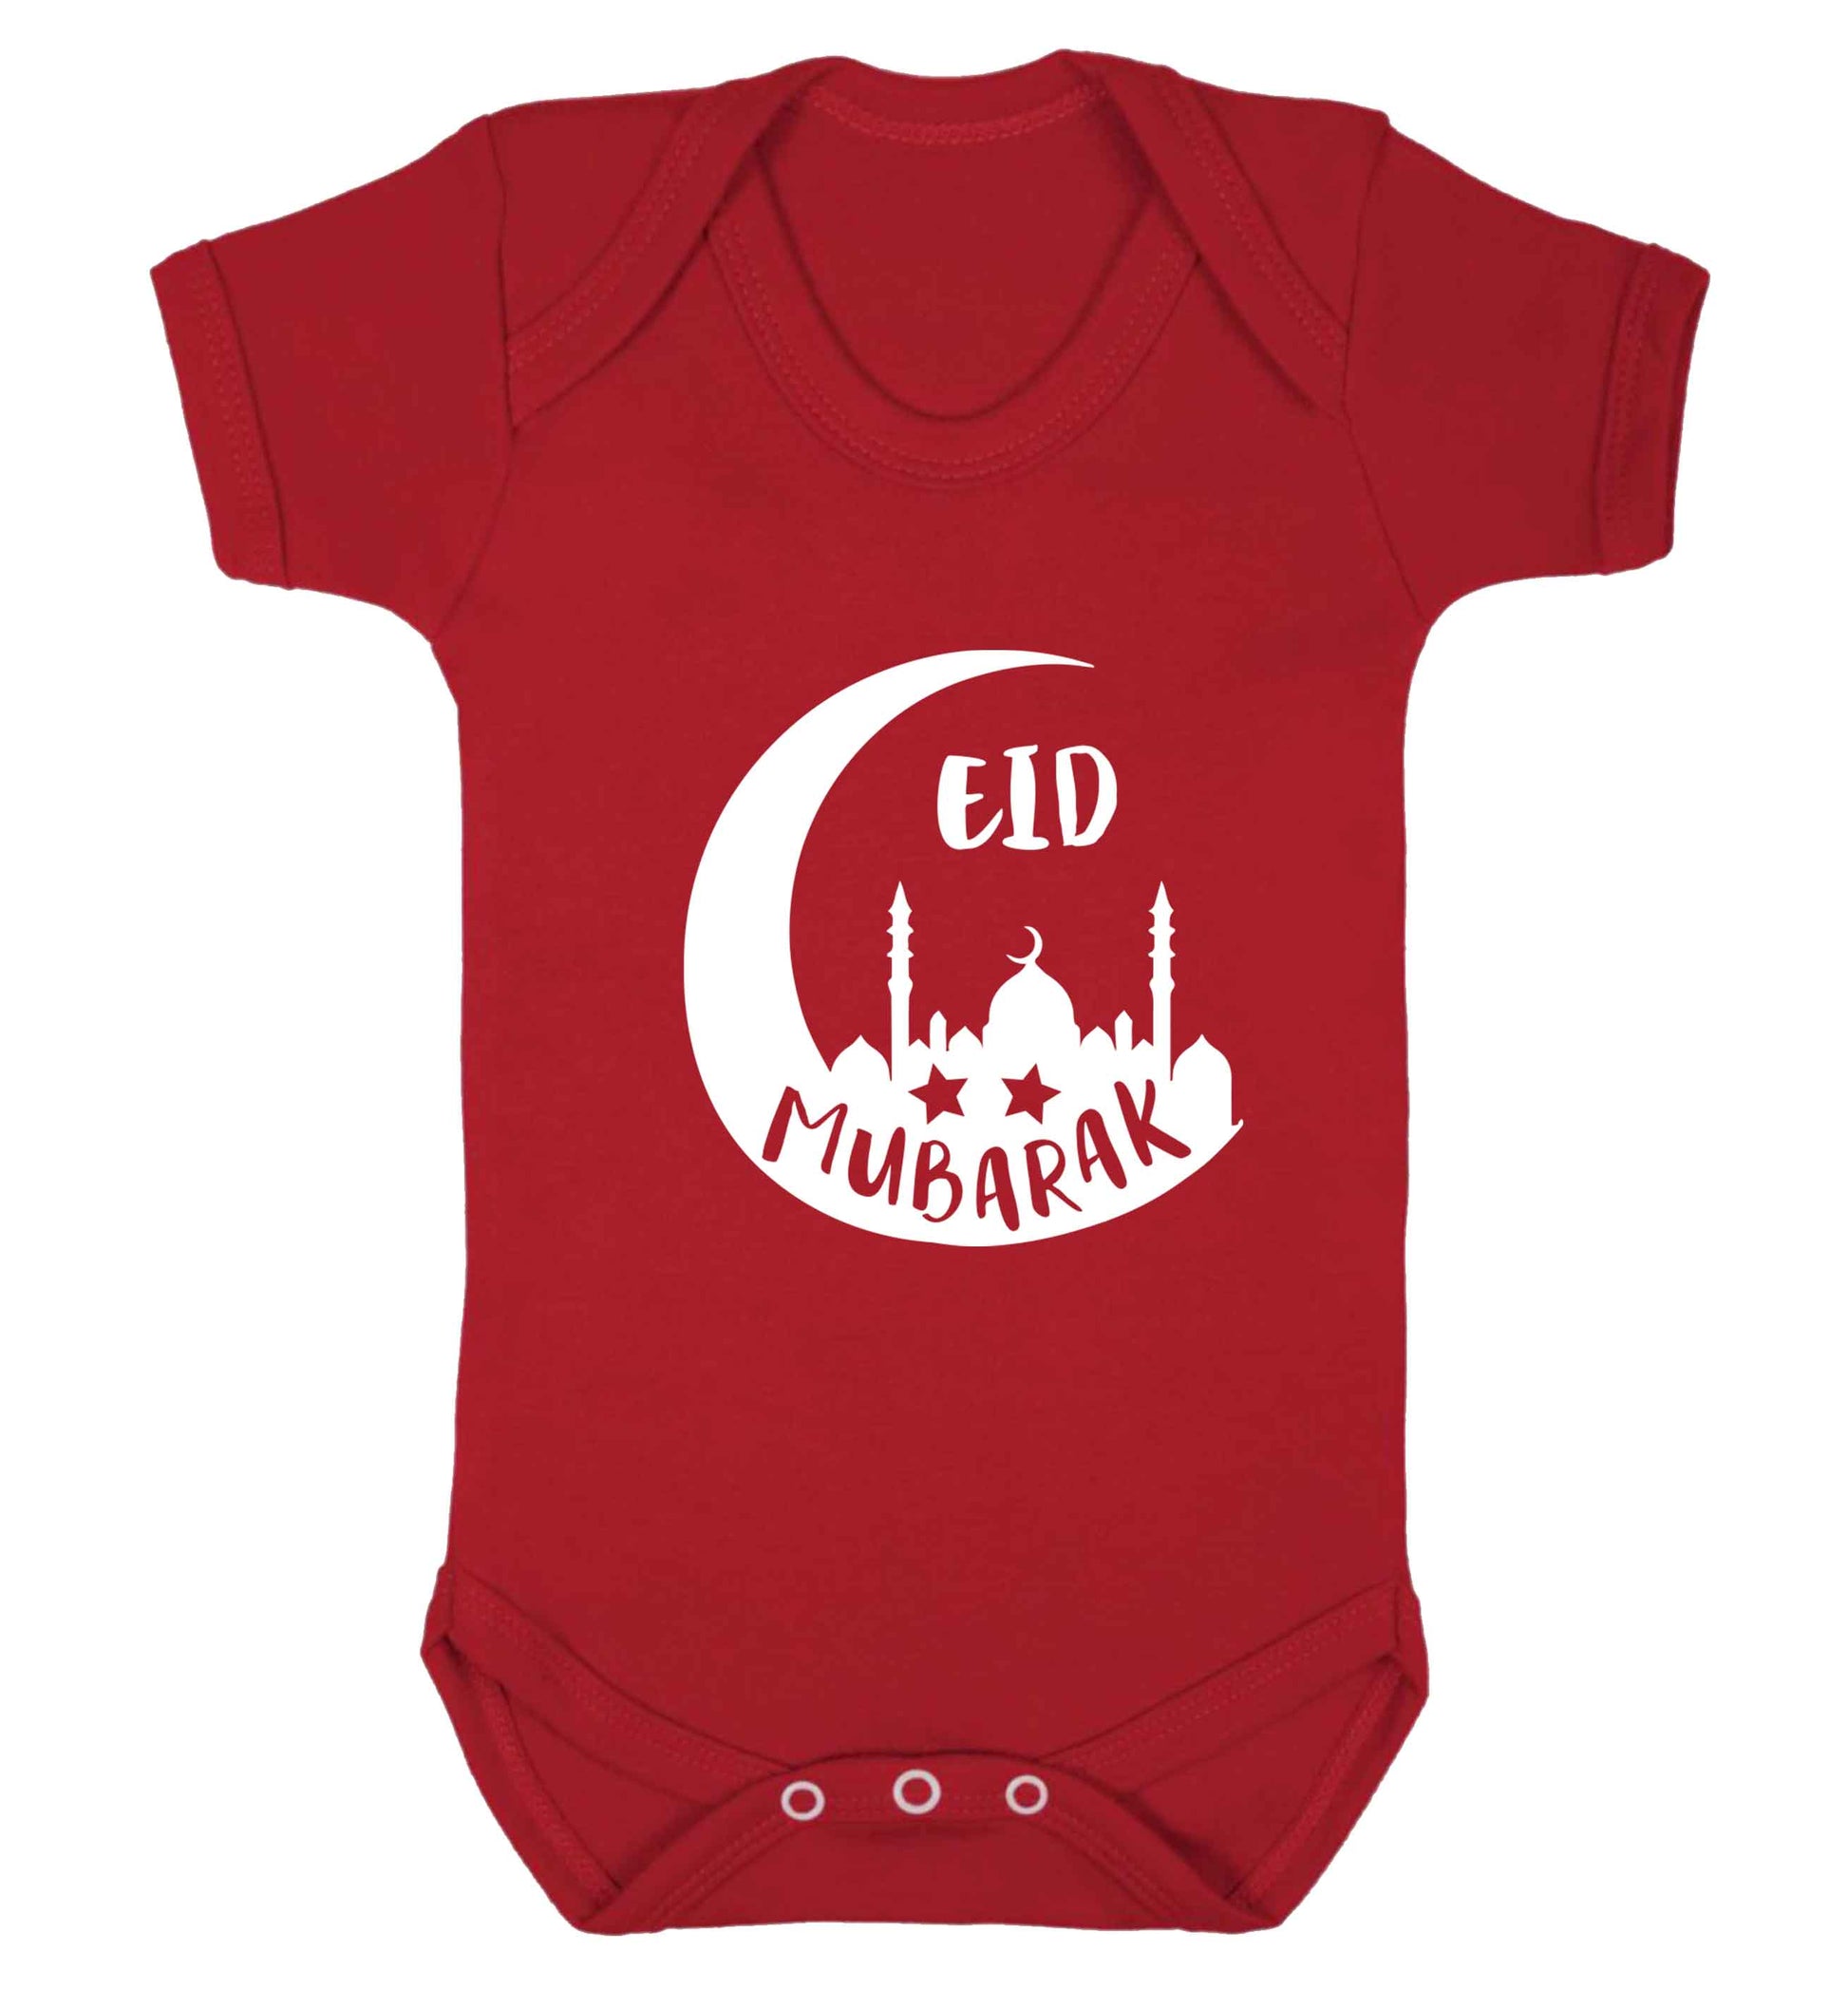 Eid mubarak baby vest red 18-24 months